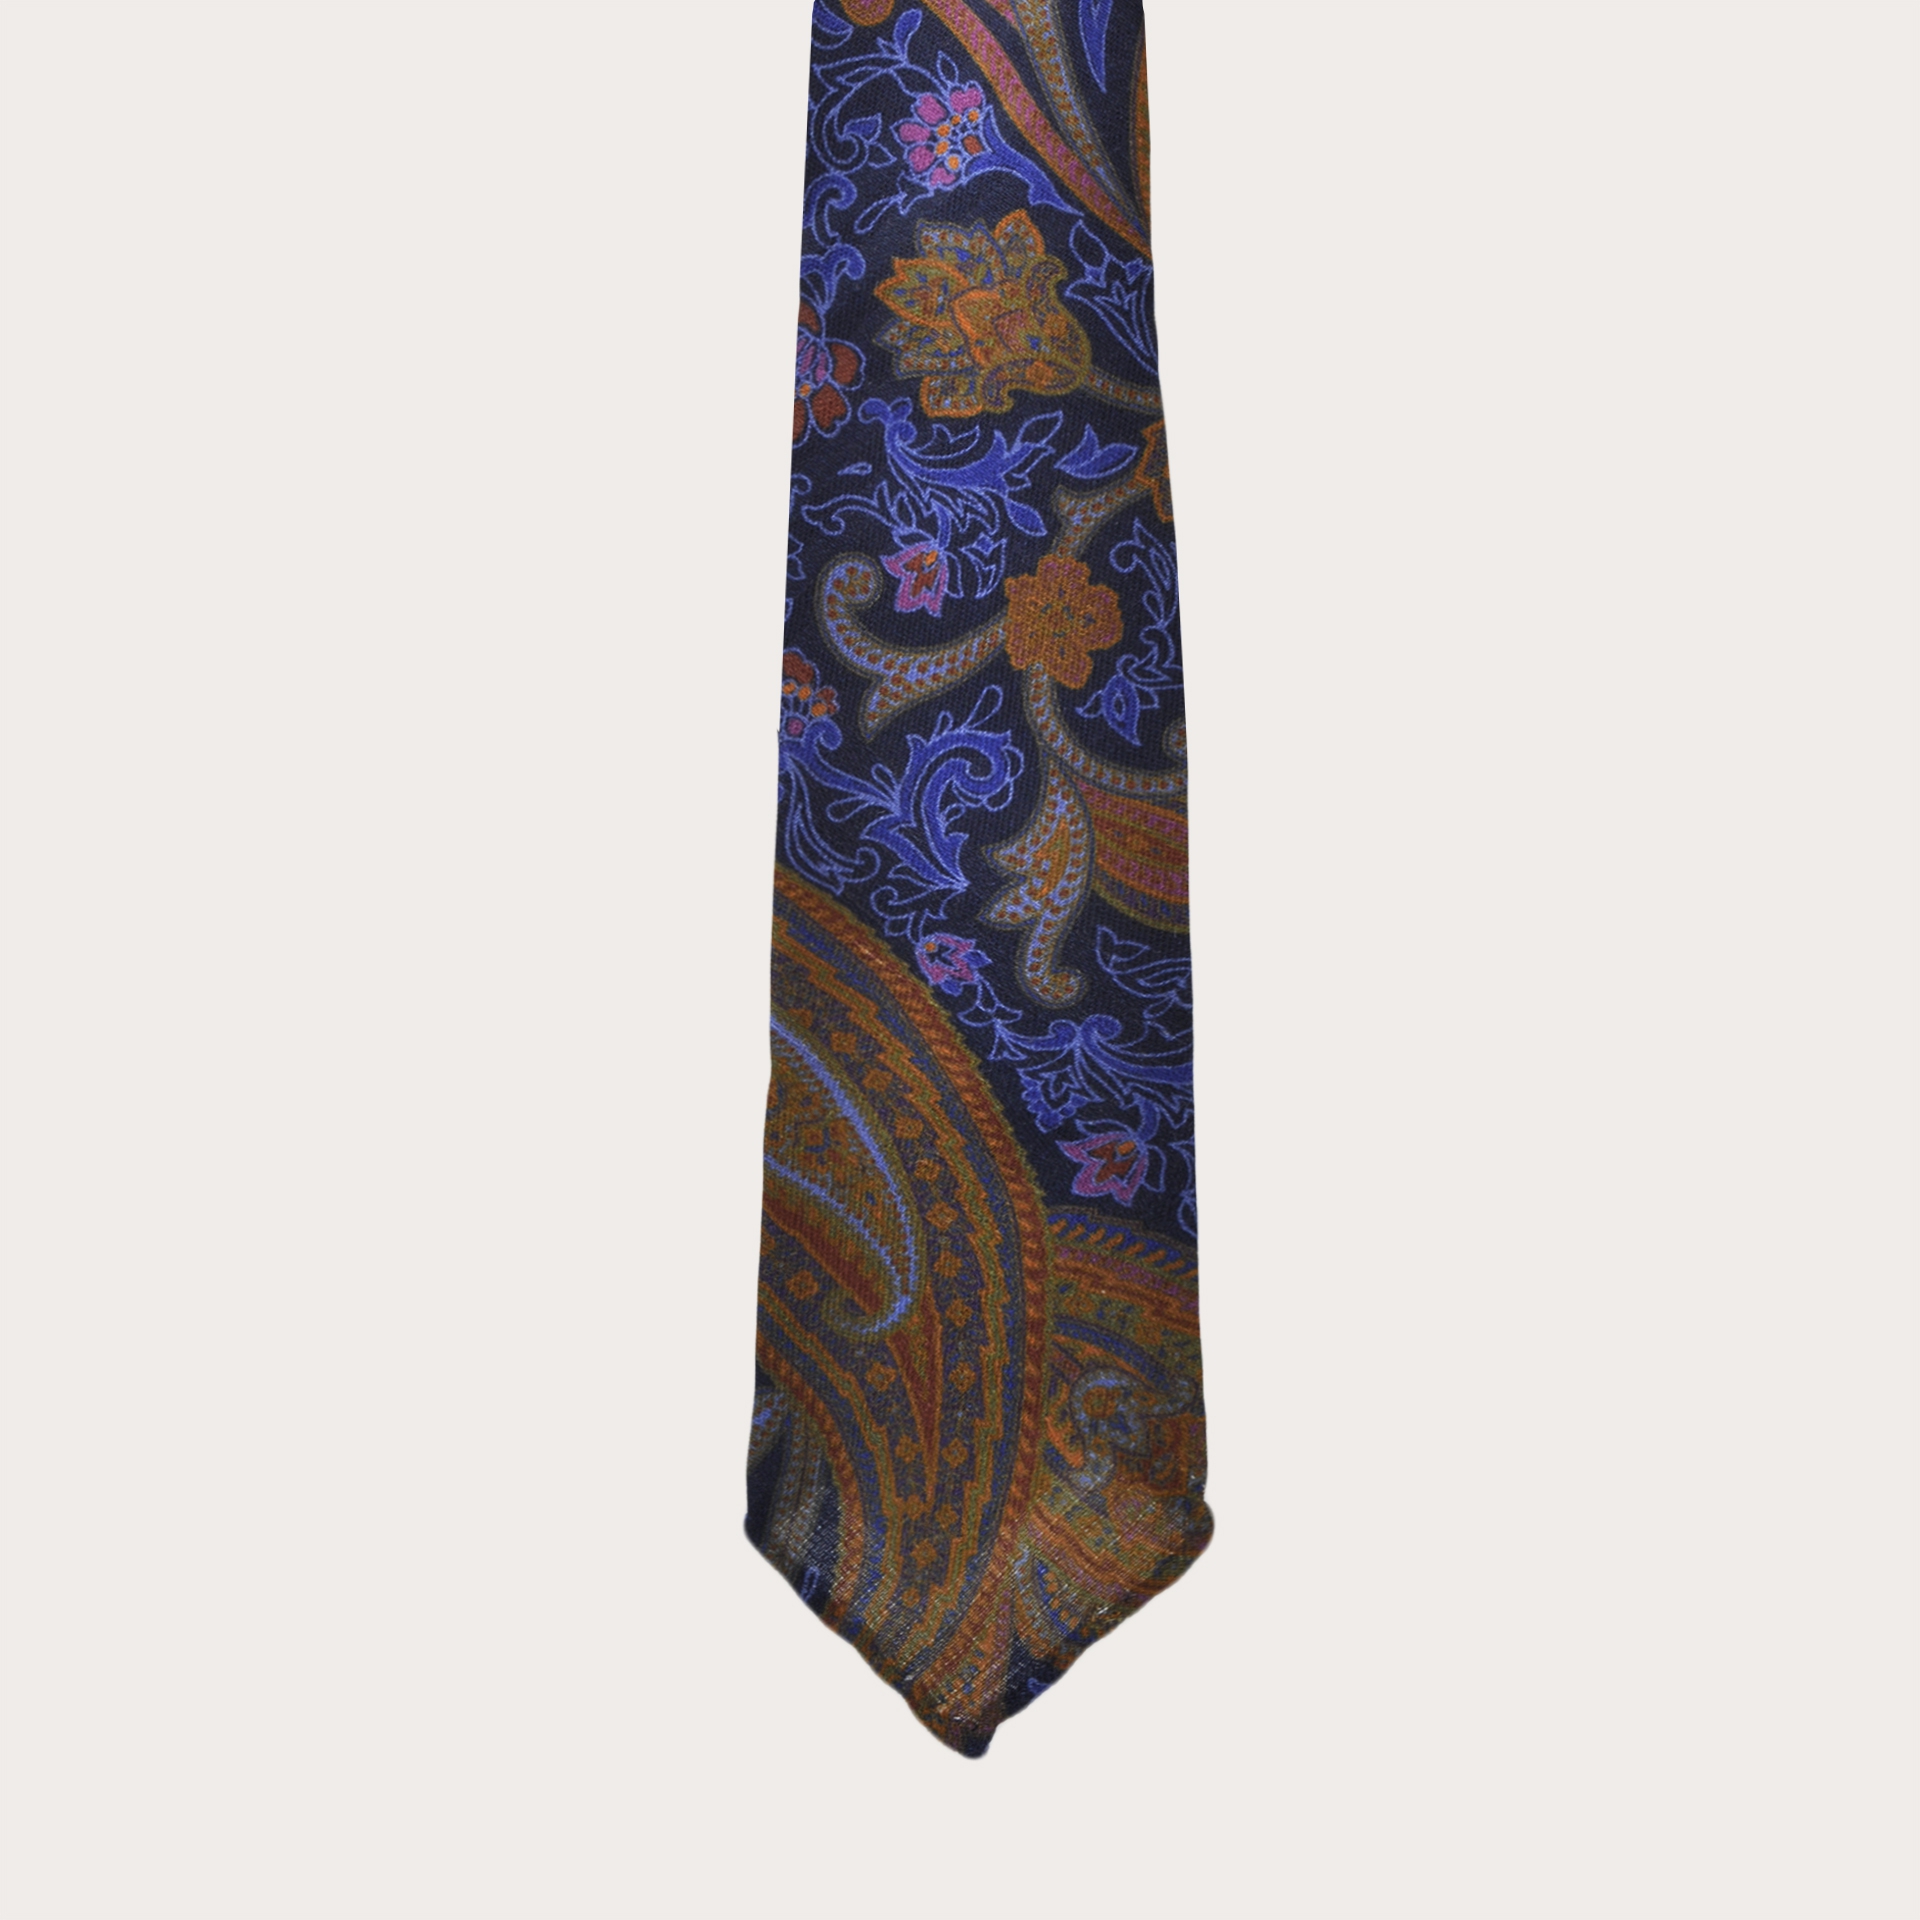 Cravate sans doublure en laine, motif cachemire multicolore